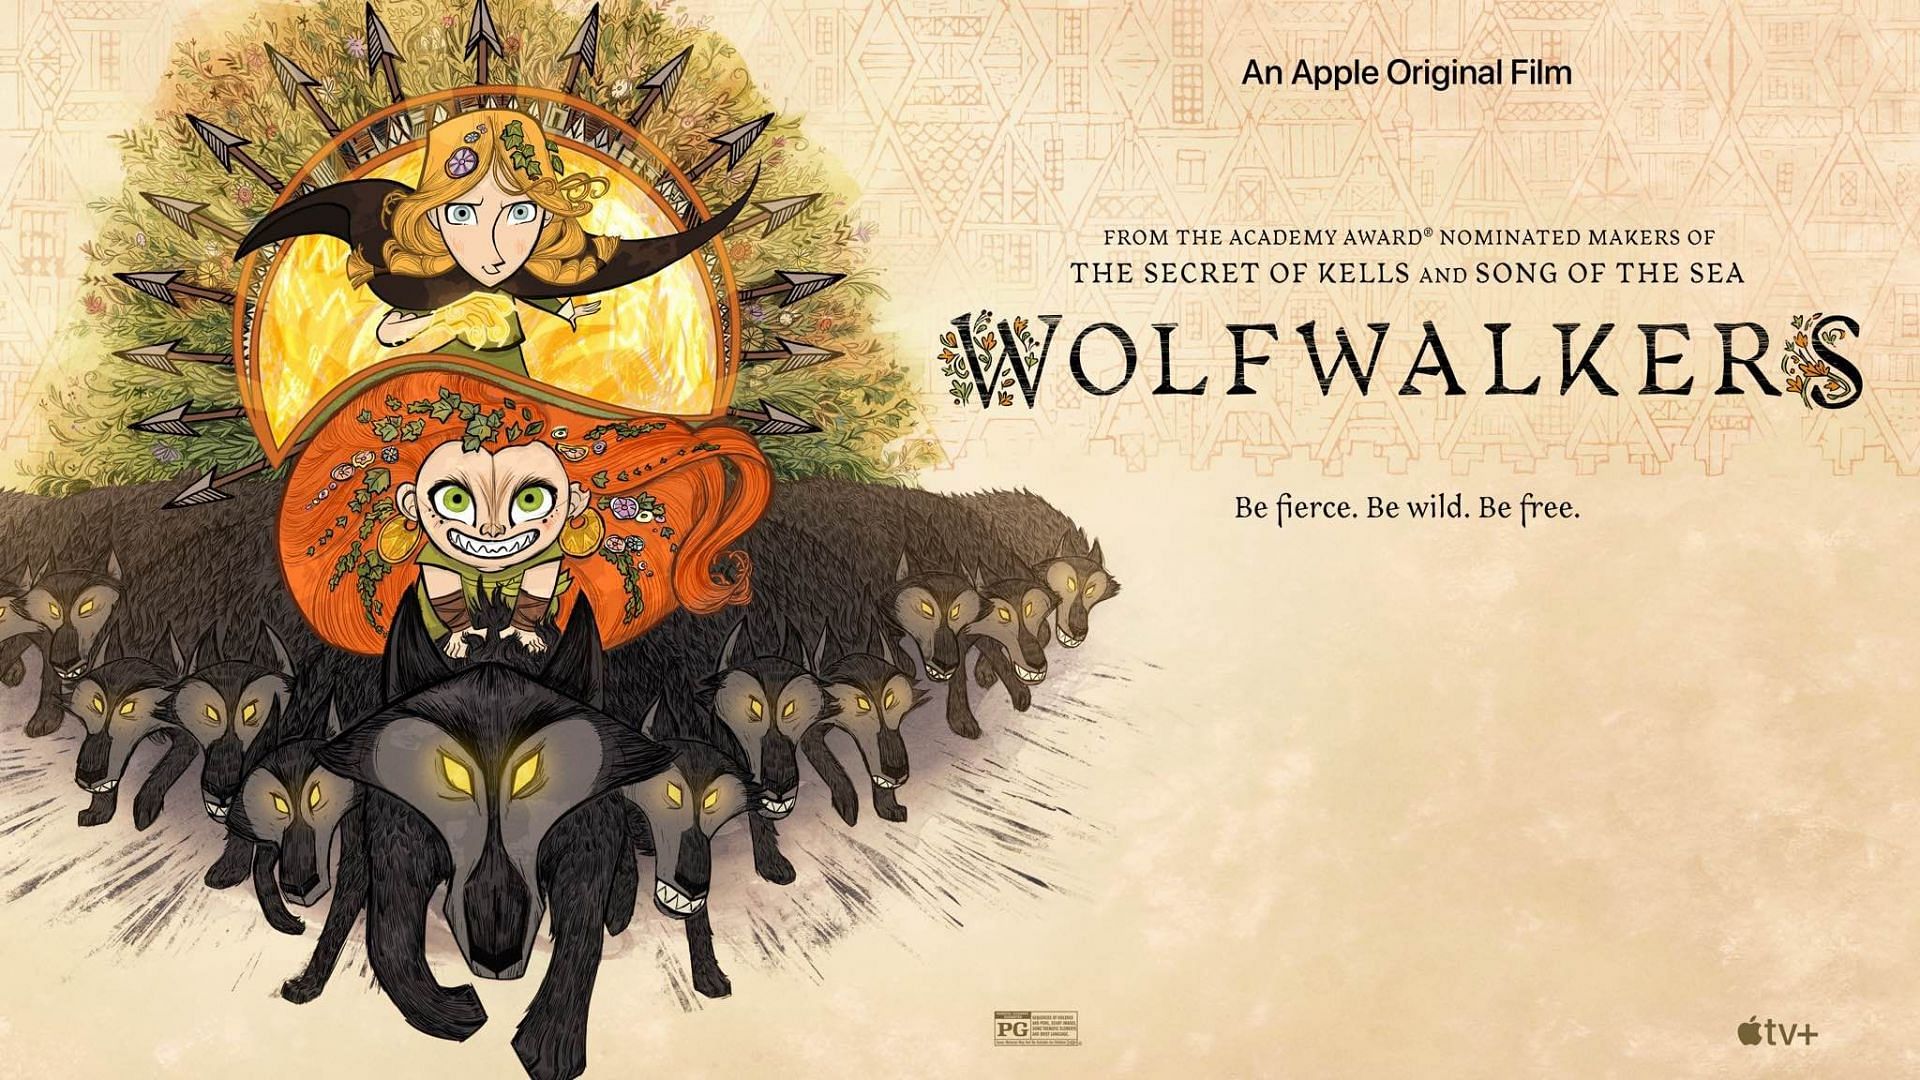 Wolfwalkers (Image via Apple TV+)